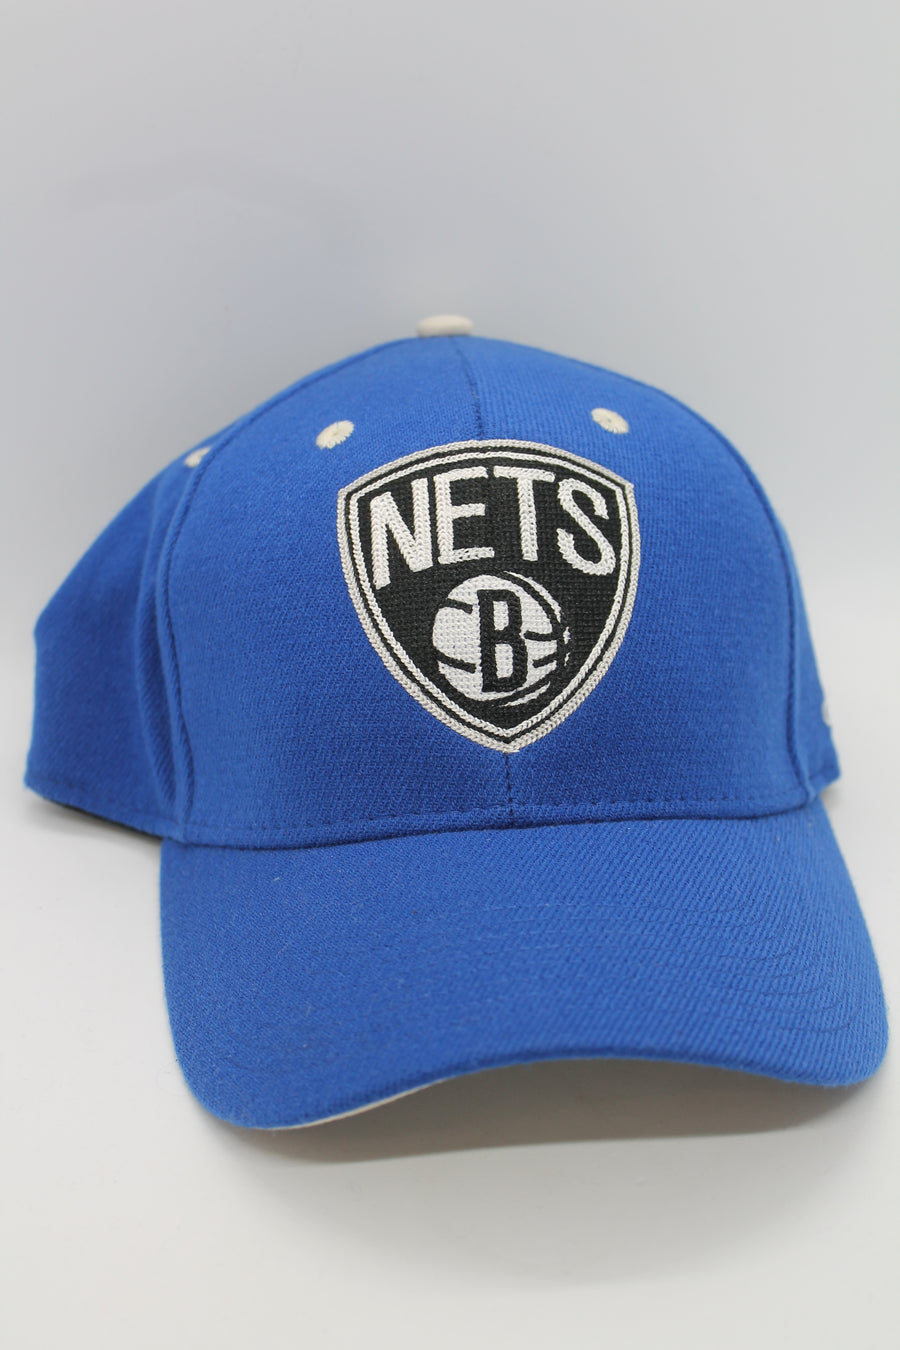 NBA Brooklyn Nets Adidas Hat